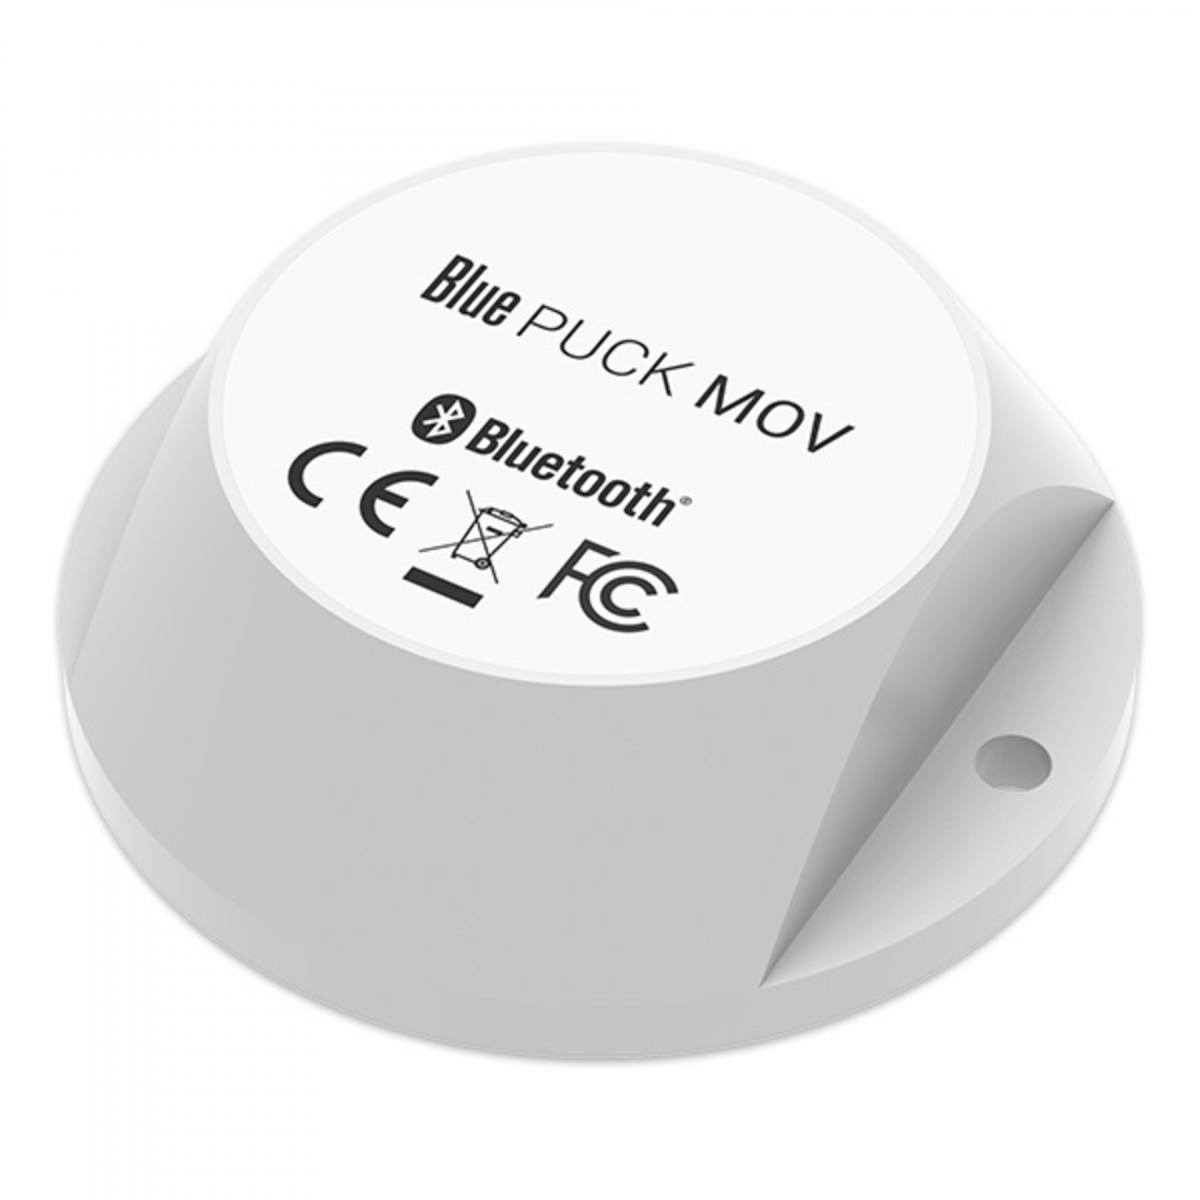 ELA PUCK MOV датчик перемещения с поддержкой Bluetooth